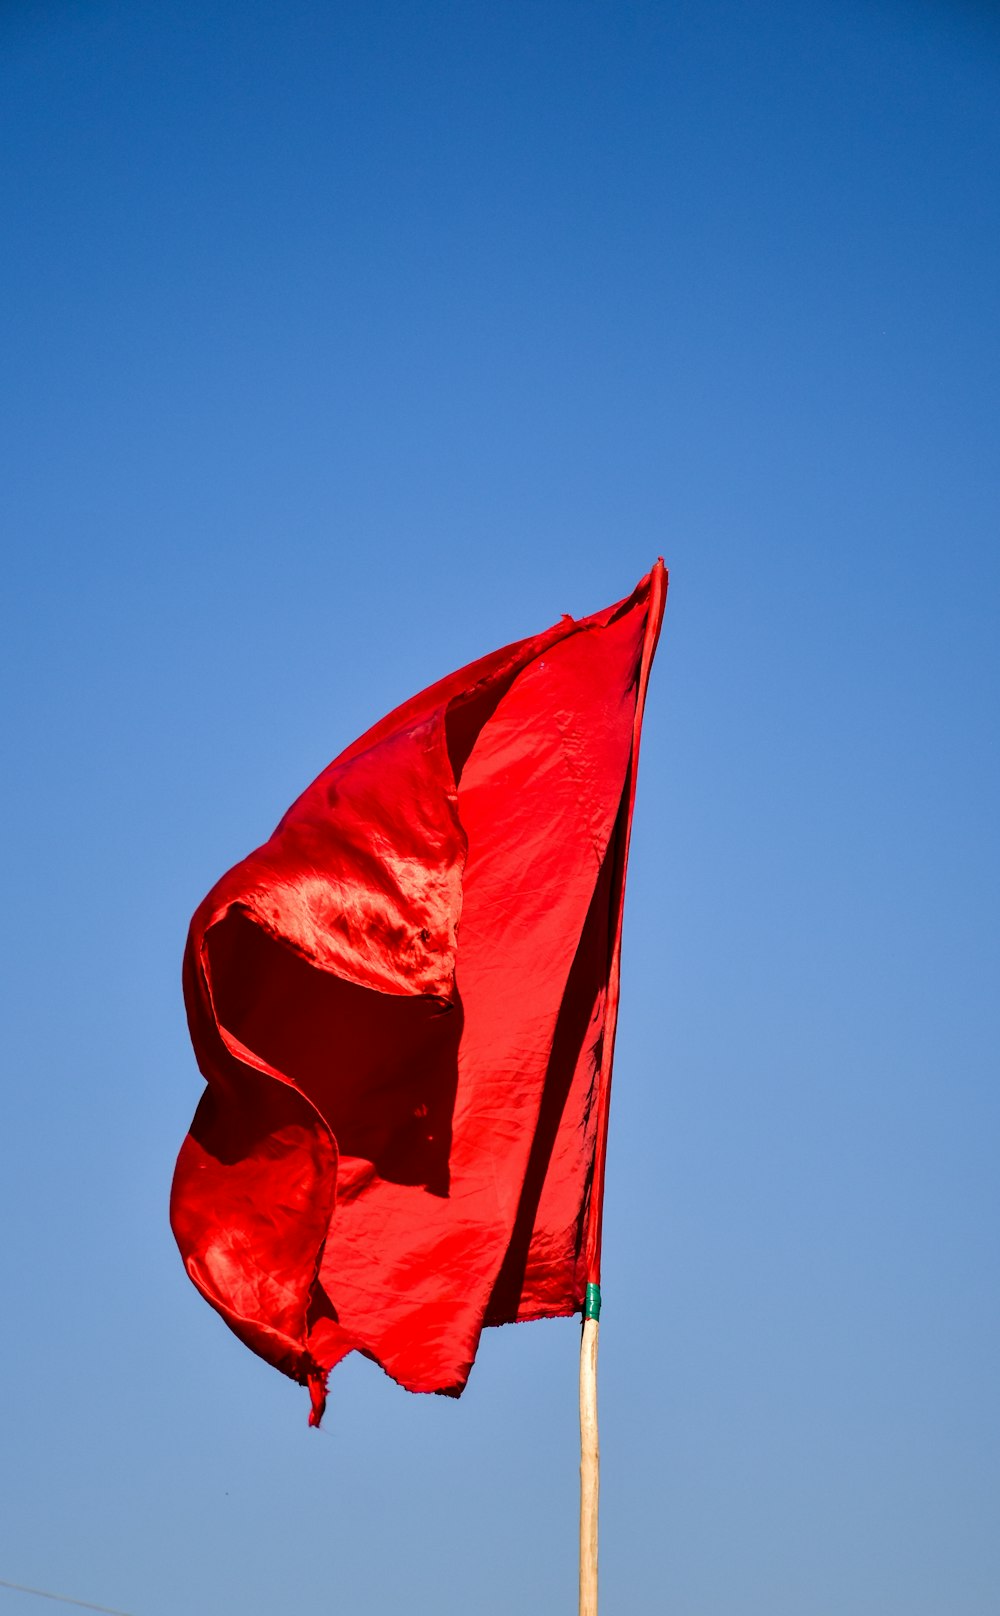 bandeira vermelha sob o céu azul durante o dia